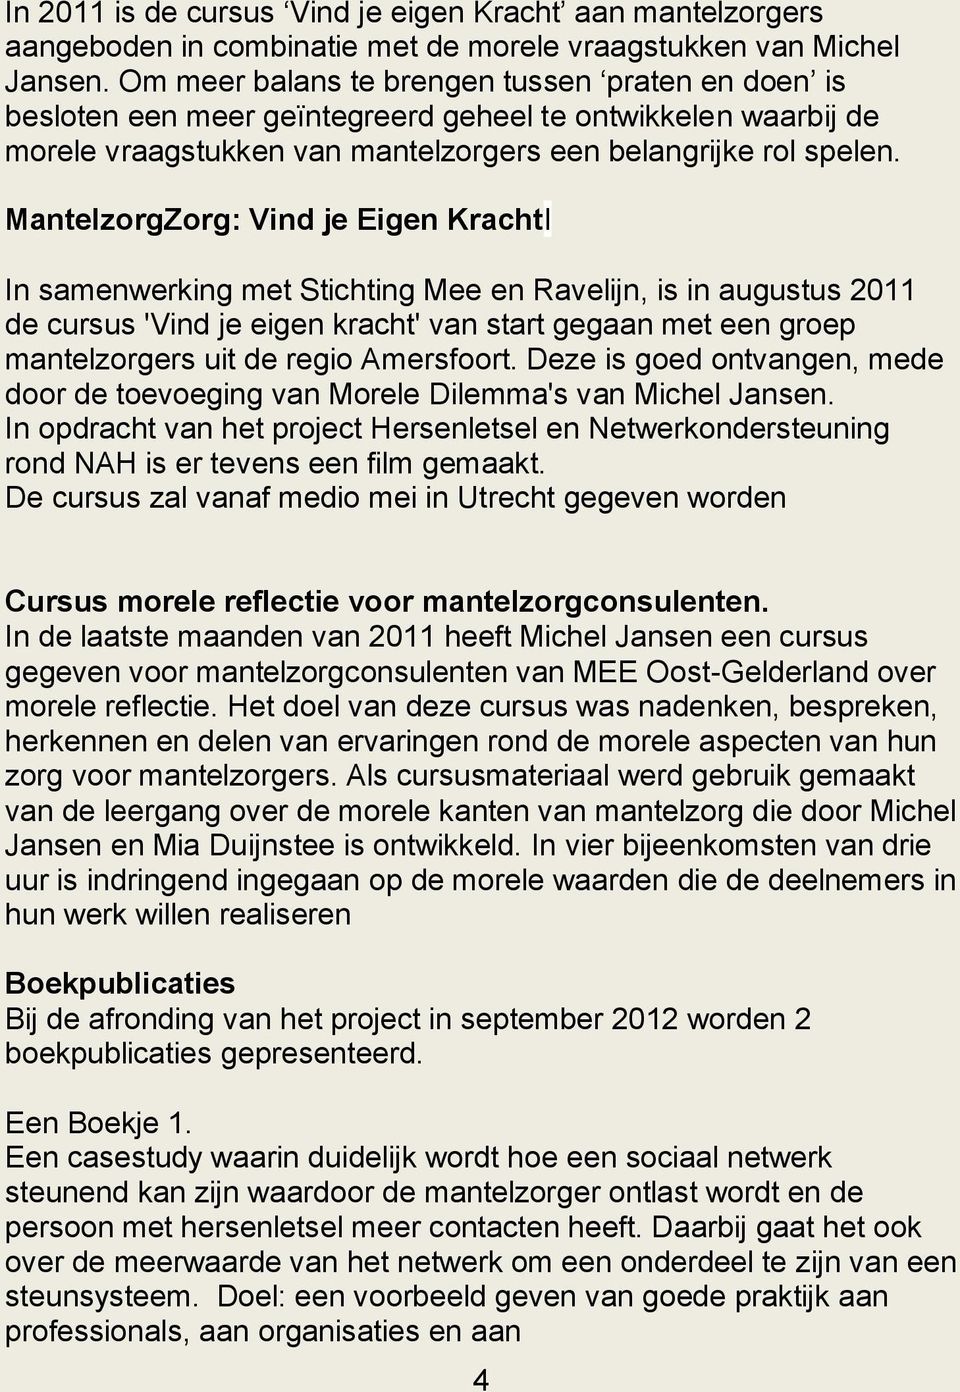 MantelzorgZorg: Vind je Eigen KrachtI In samenwerking met Stichting Mee en Ravelijn, is in augustus 2011 de cursus 'Vind je eigen kracht' van start gegaan met een groep mantelzorgers uit de regio